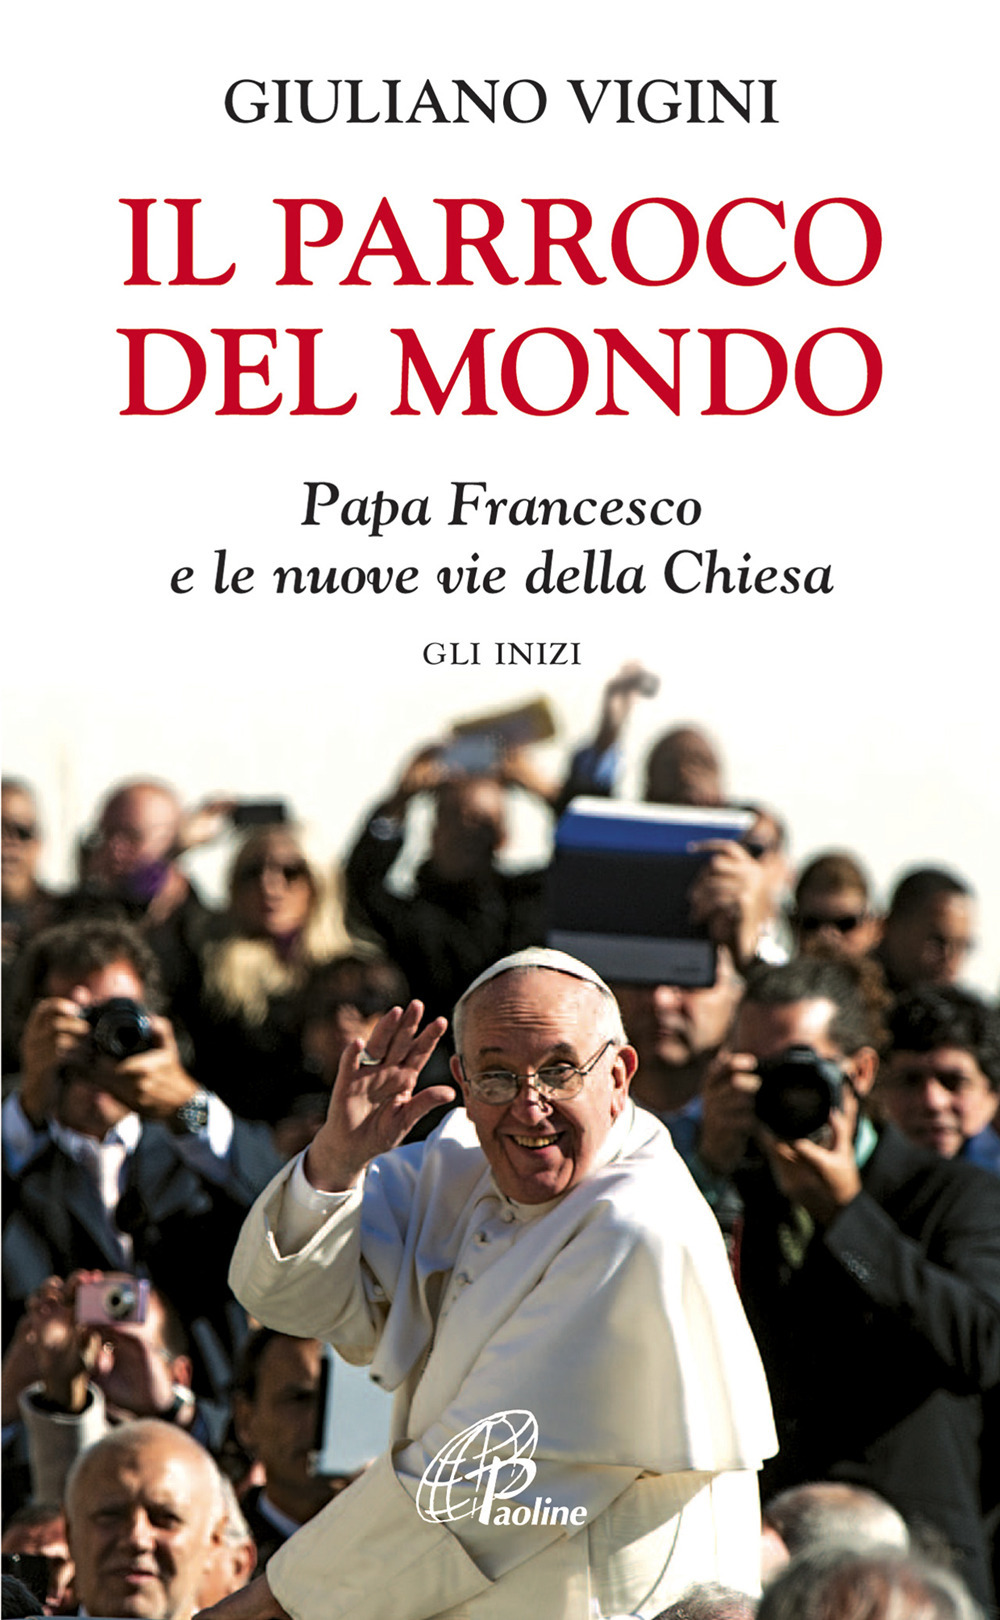 Image of Il parroco del mondo. Papa Francesco e le nuove vie della Chiesa. Gli inizi